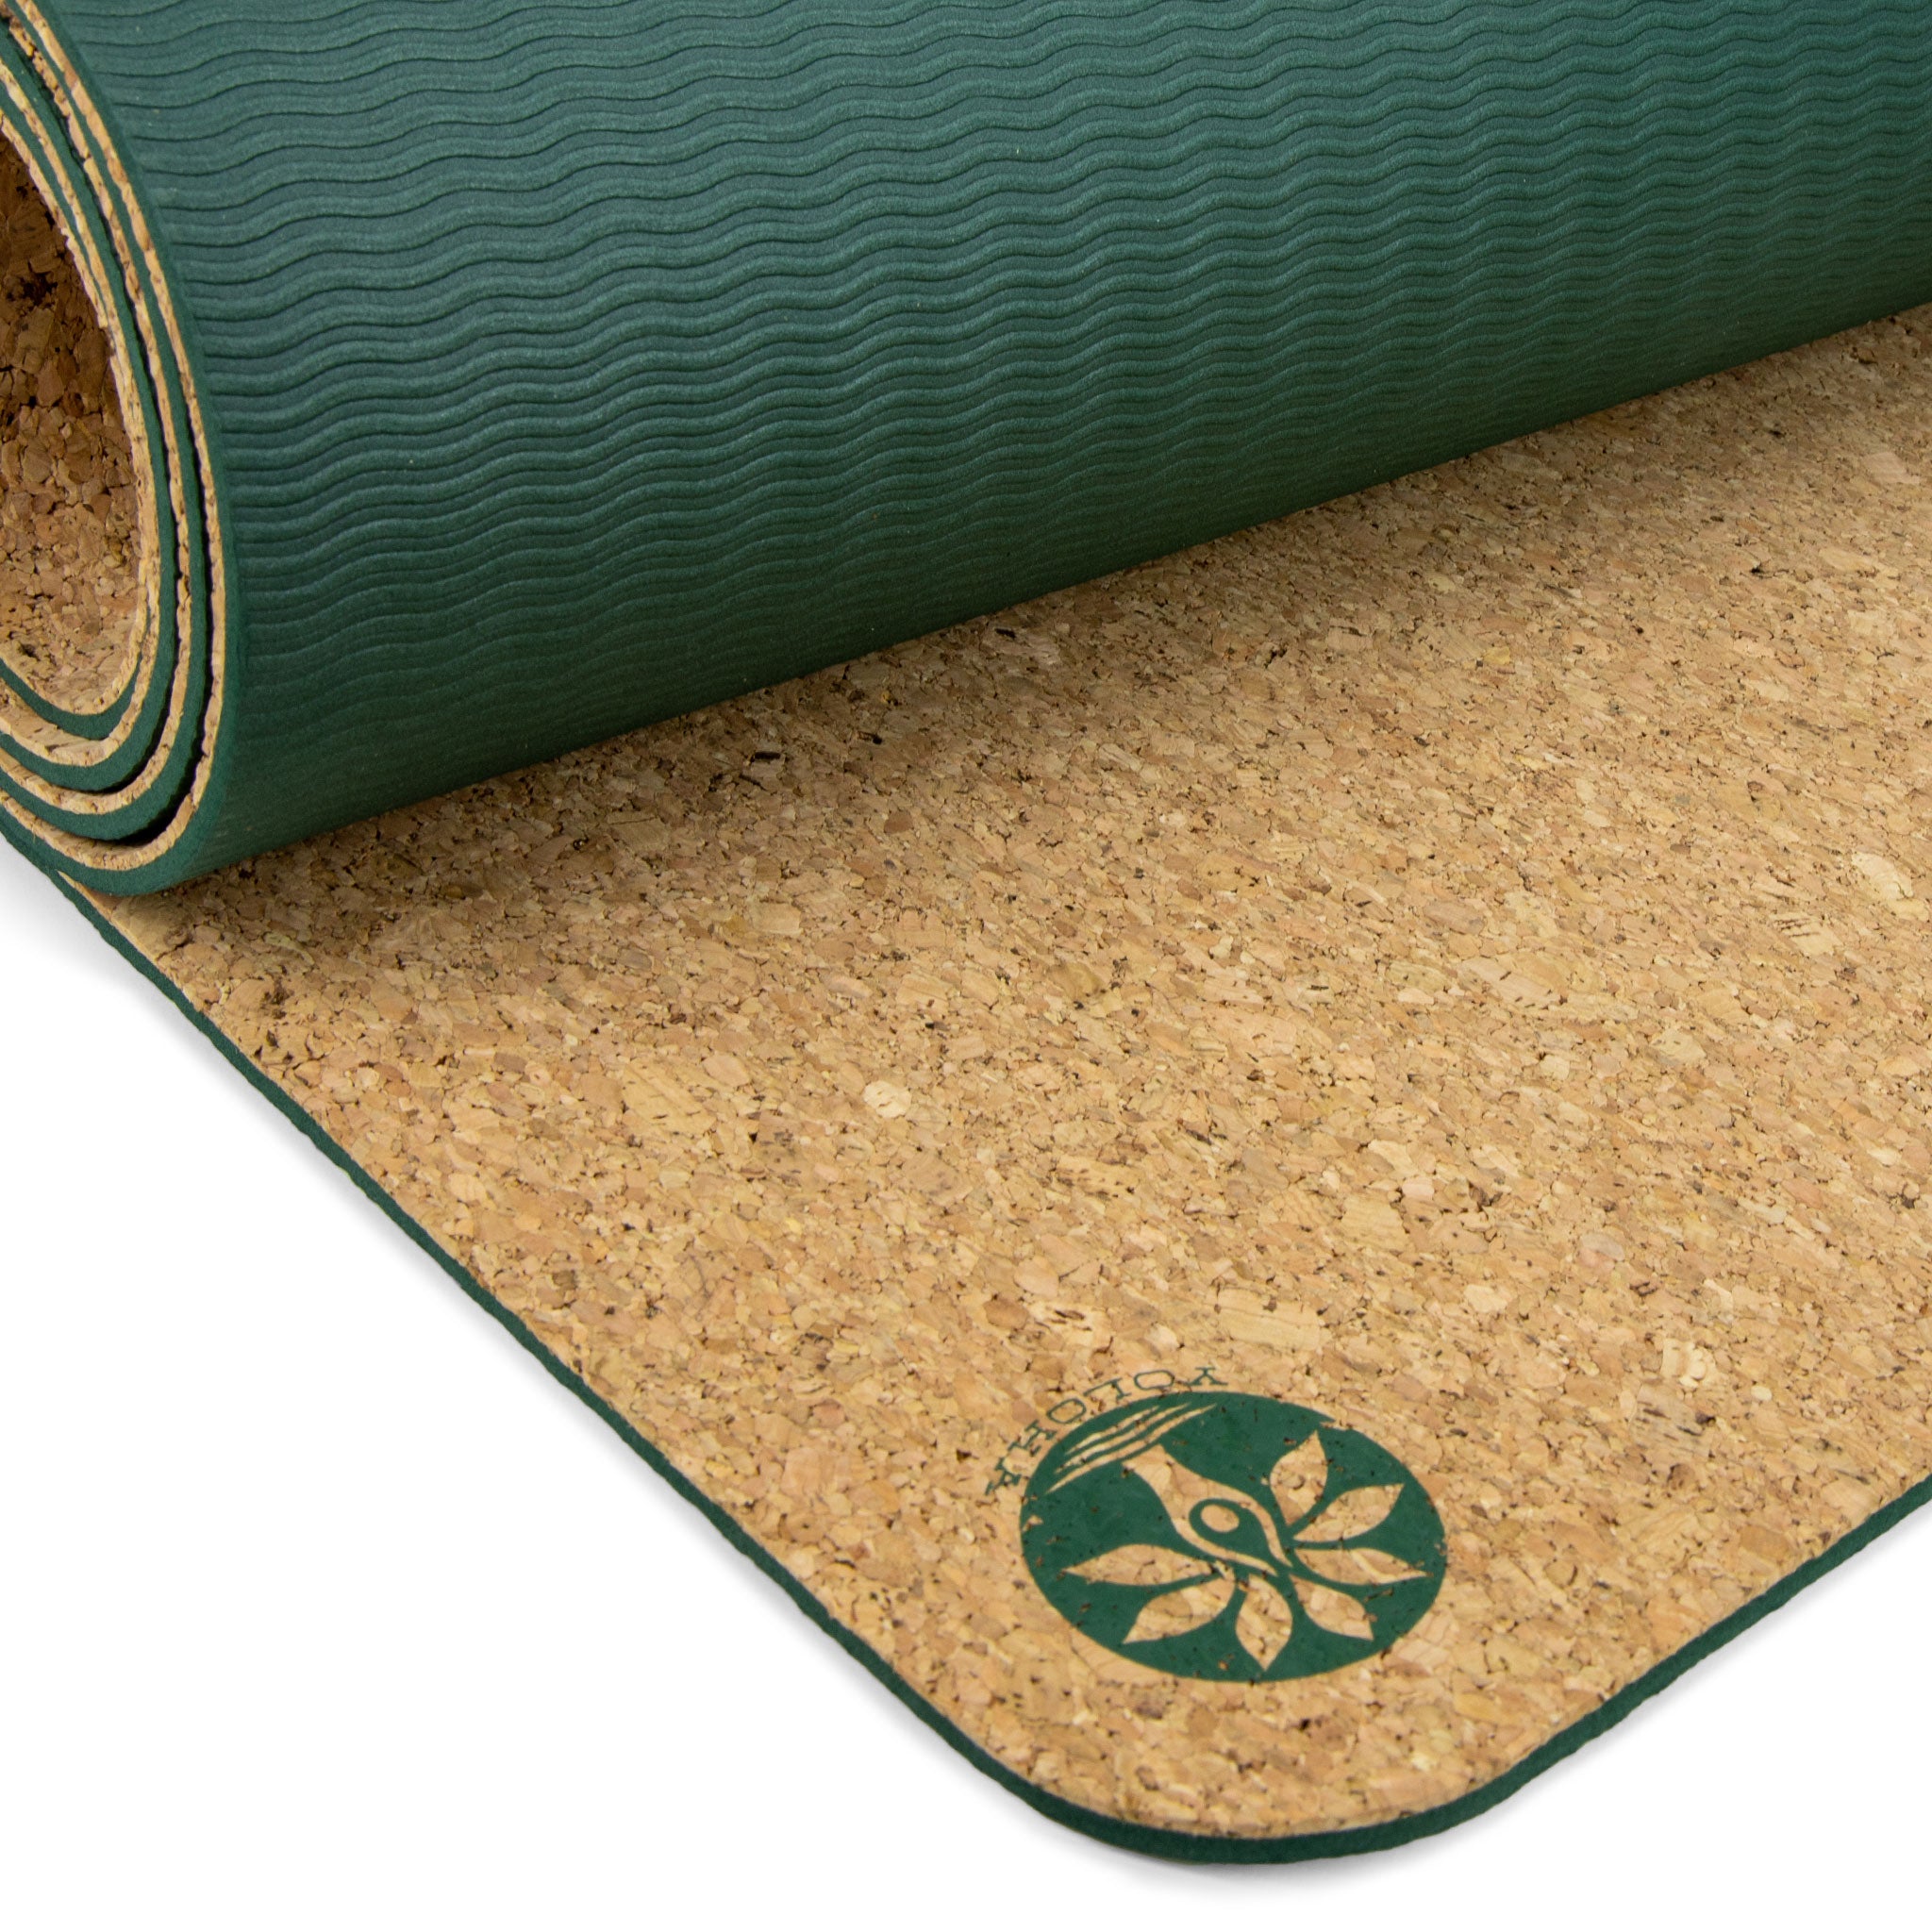 Cork Yoga Mat - Buy Best Cork Mat / Cork Mat Online, 5mm